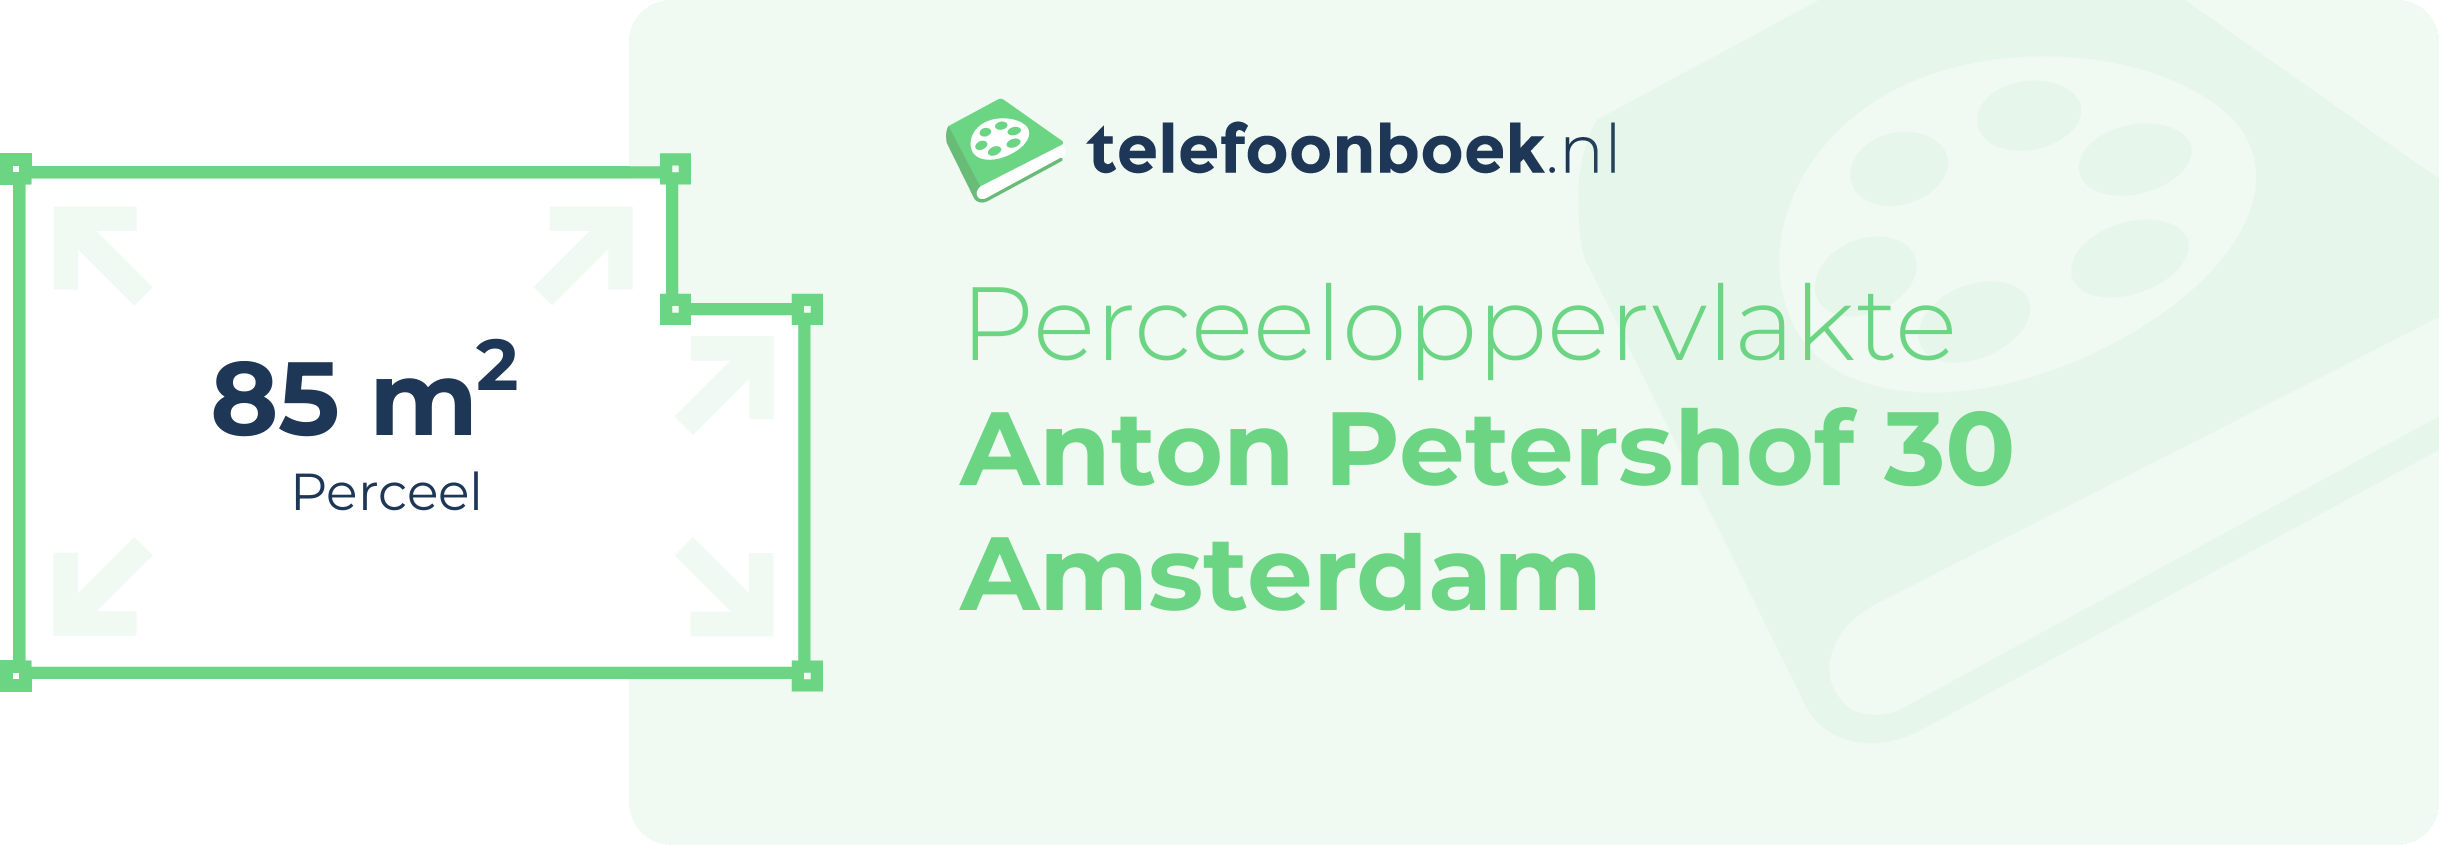 Perceeloppervlakte Anton Petershof 30 Amsterdam